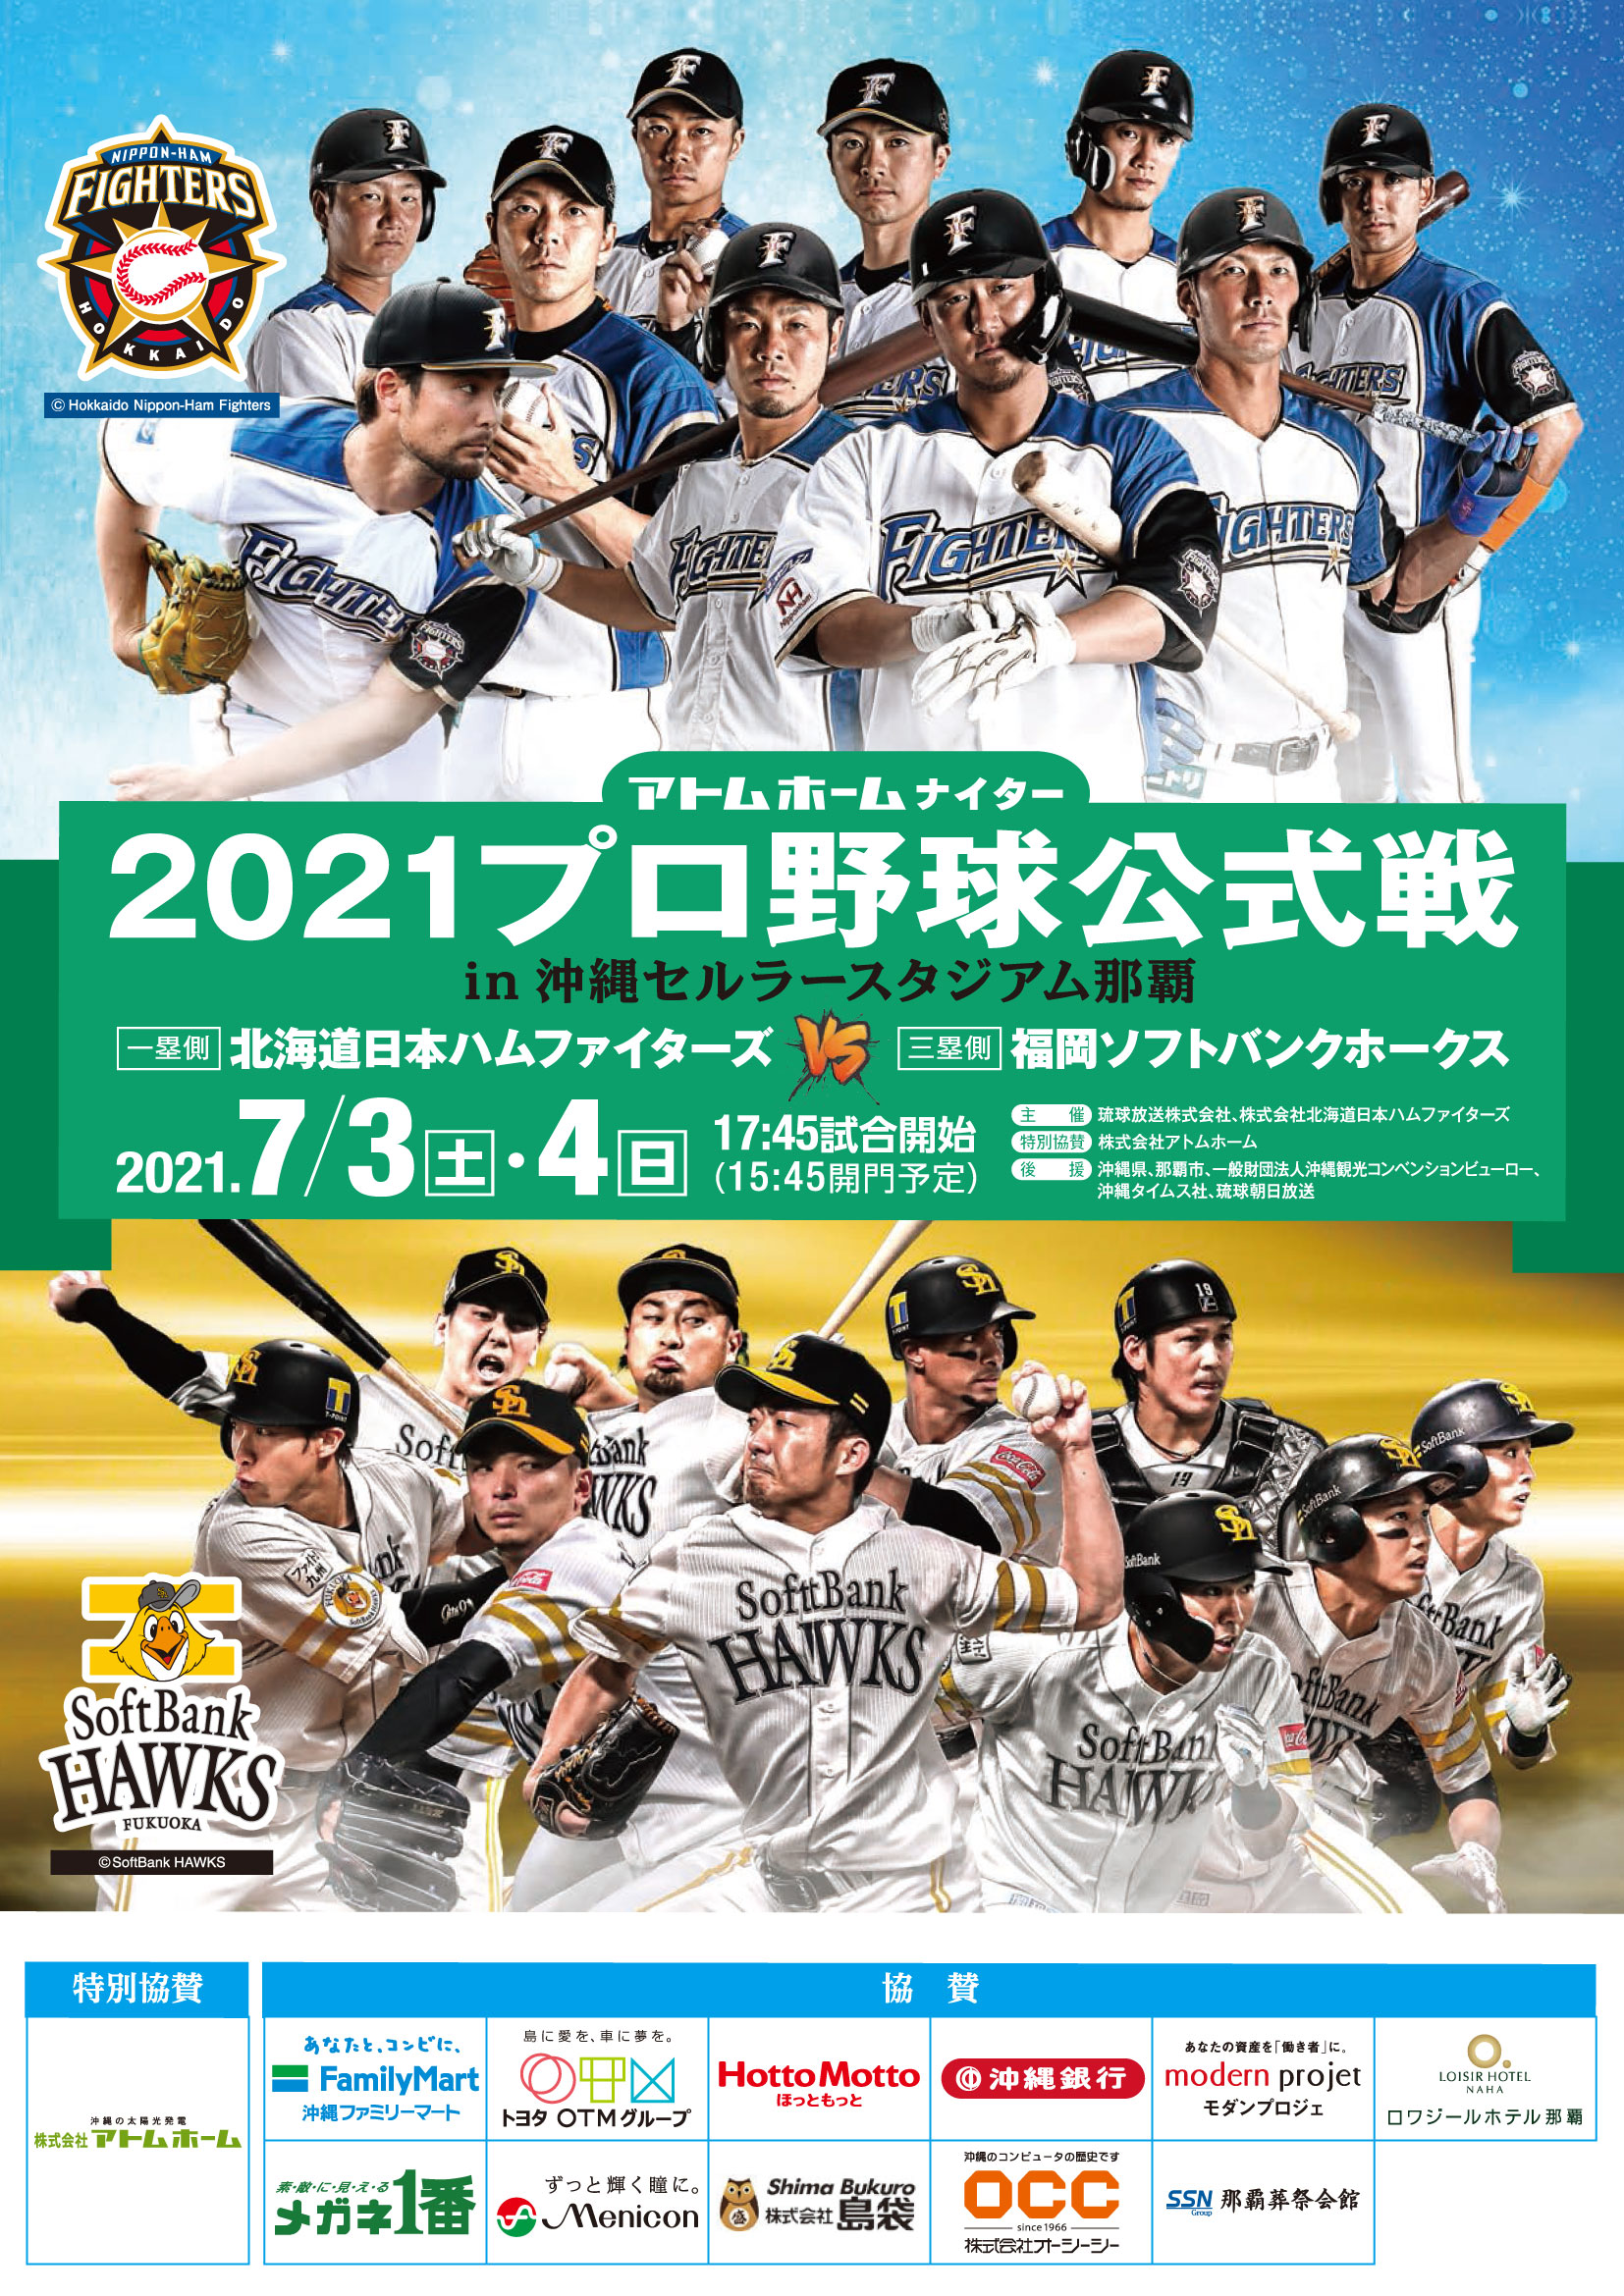 アトムホームナイター 21 プロ野球パシフィックリーグ公式戦 Br 北海道日本ハムファイターズ Vs 福岡ソフトバンクホークス